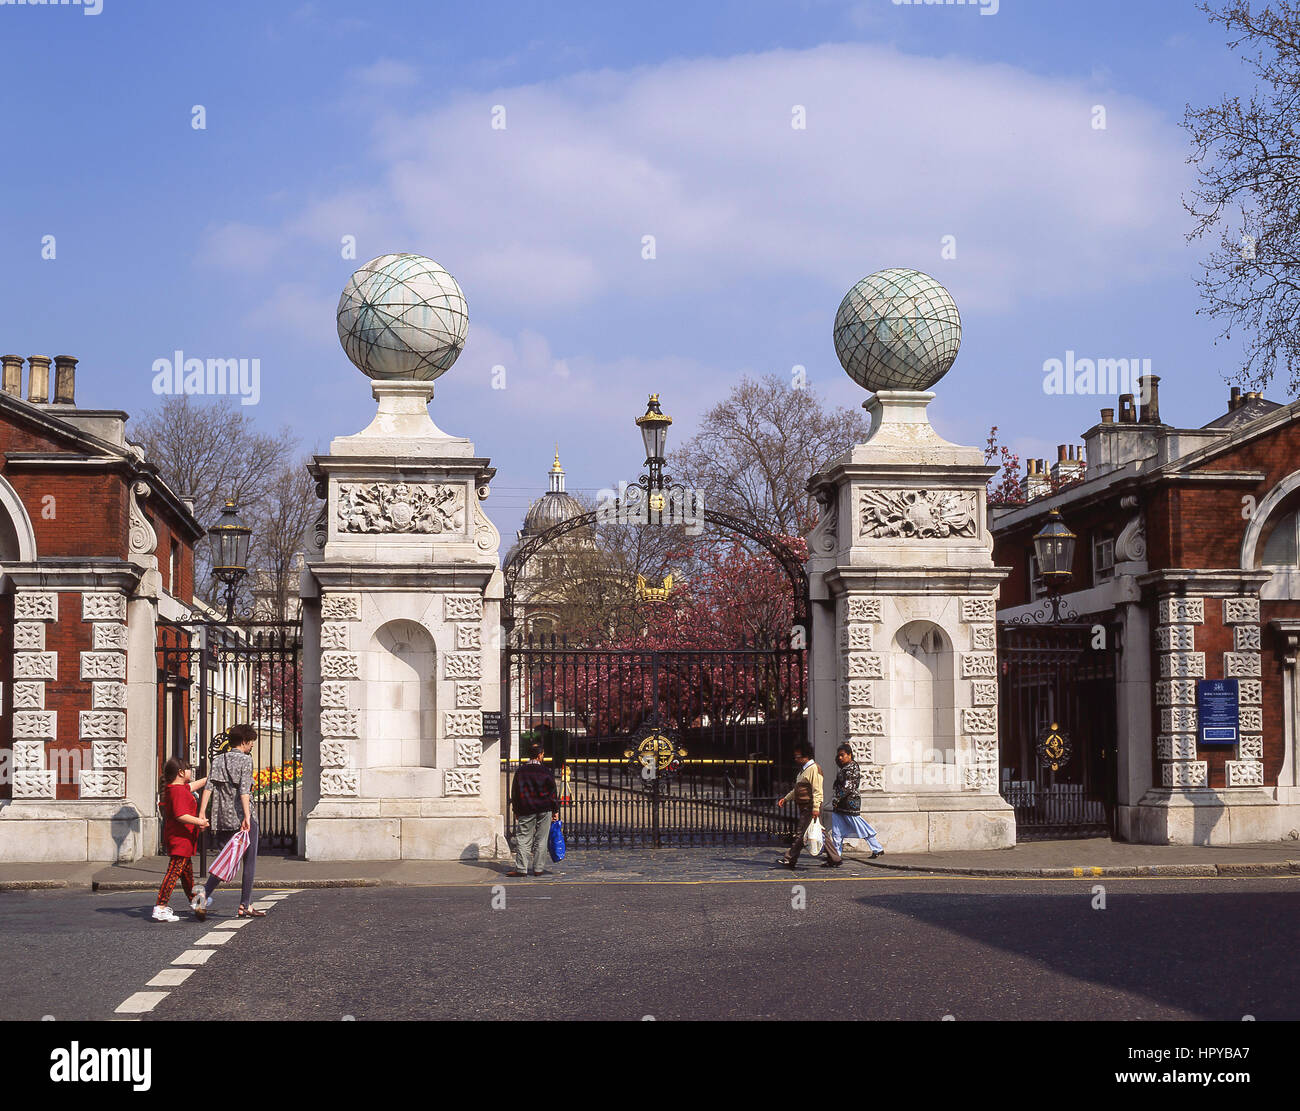 Porte d'entrée à l'Old Royal Naval College de Greenwich, London Borough of Greenwich, Greater London, Angleterre, Royaume-Uni Banque D'Images